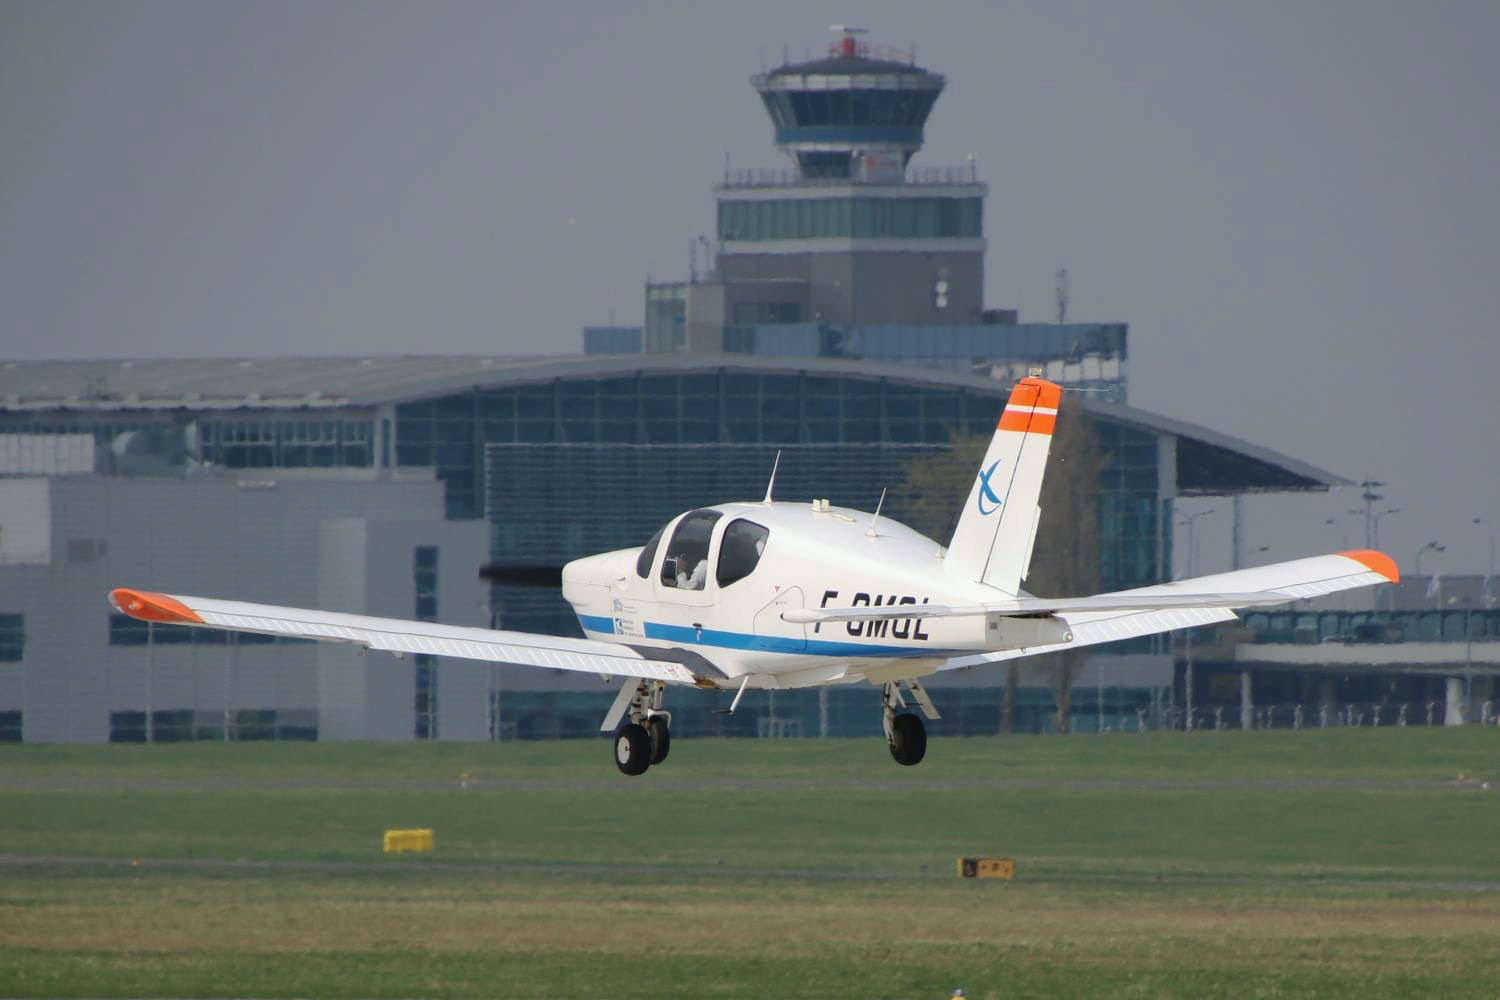 A TB20 seen landing on a runway